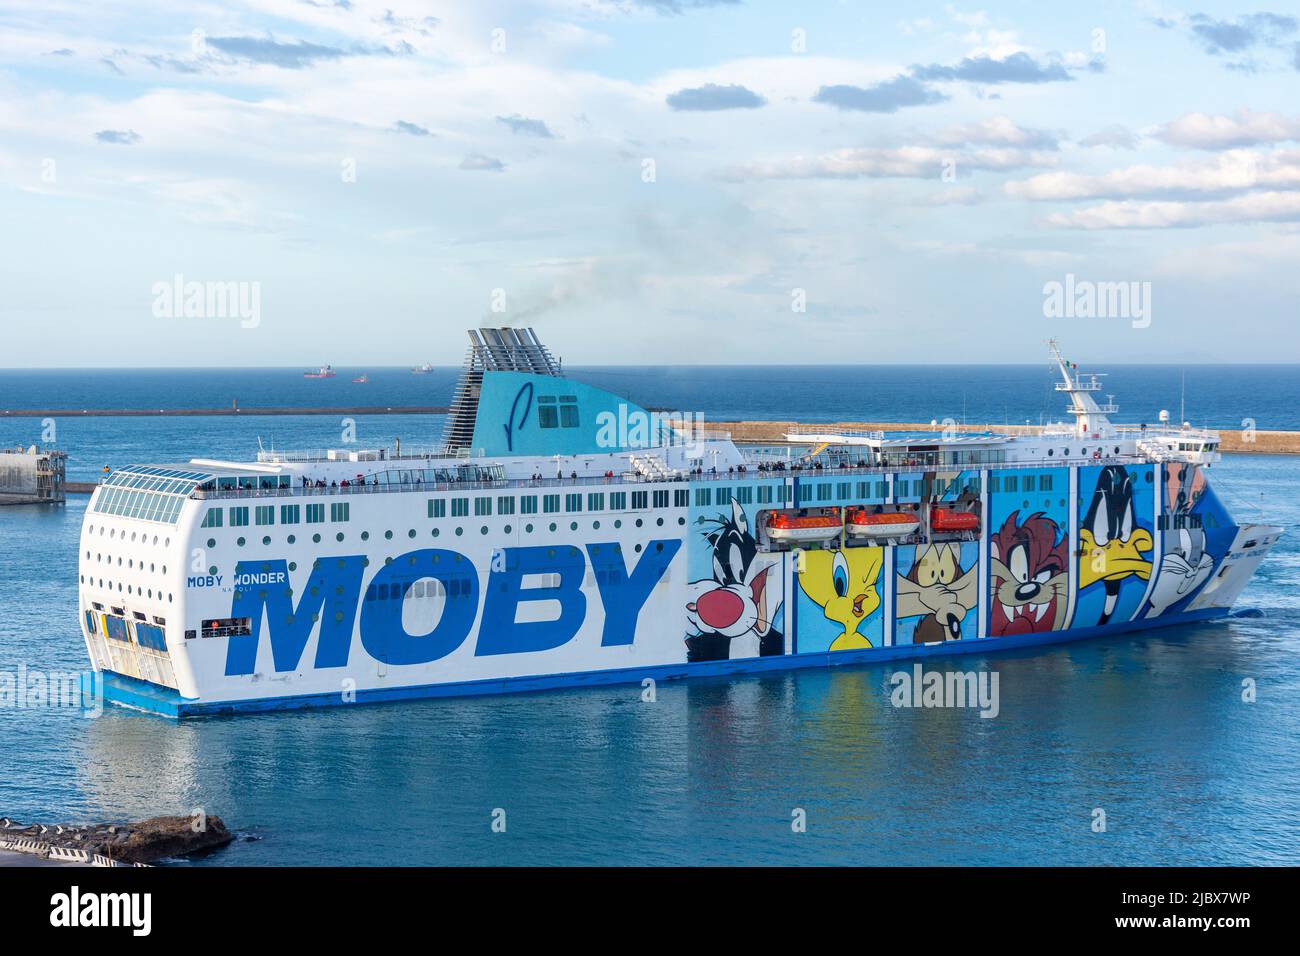 Traghetto Moby Wonder nel Porto di Livorno, Livorno, Regione Toscana, Italia Foto Stock